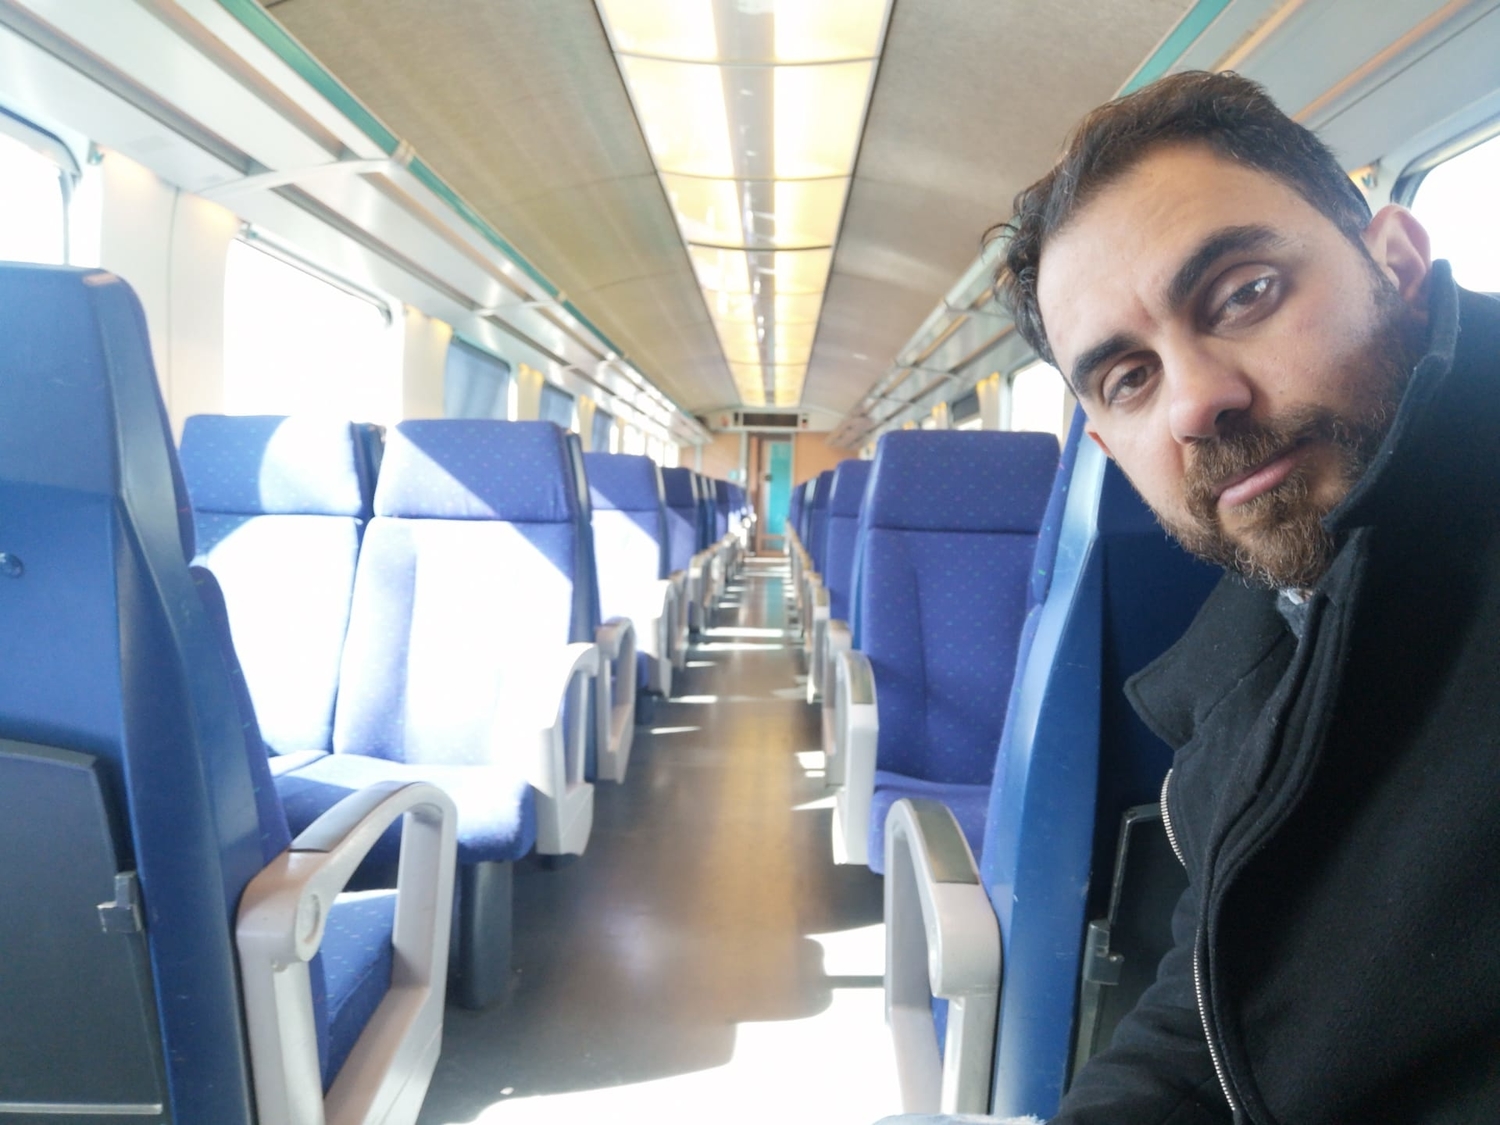 Majdi rentrant en train, le dernier trajet, dit-il, avant le confinement général en Belgique qui avait commencé le 18 mars 2020 à midi /crédit photo : Majdi